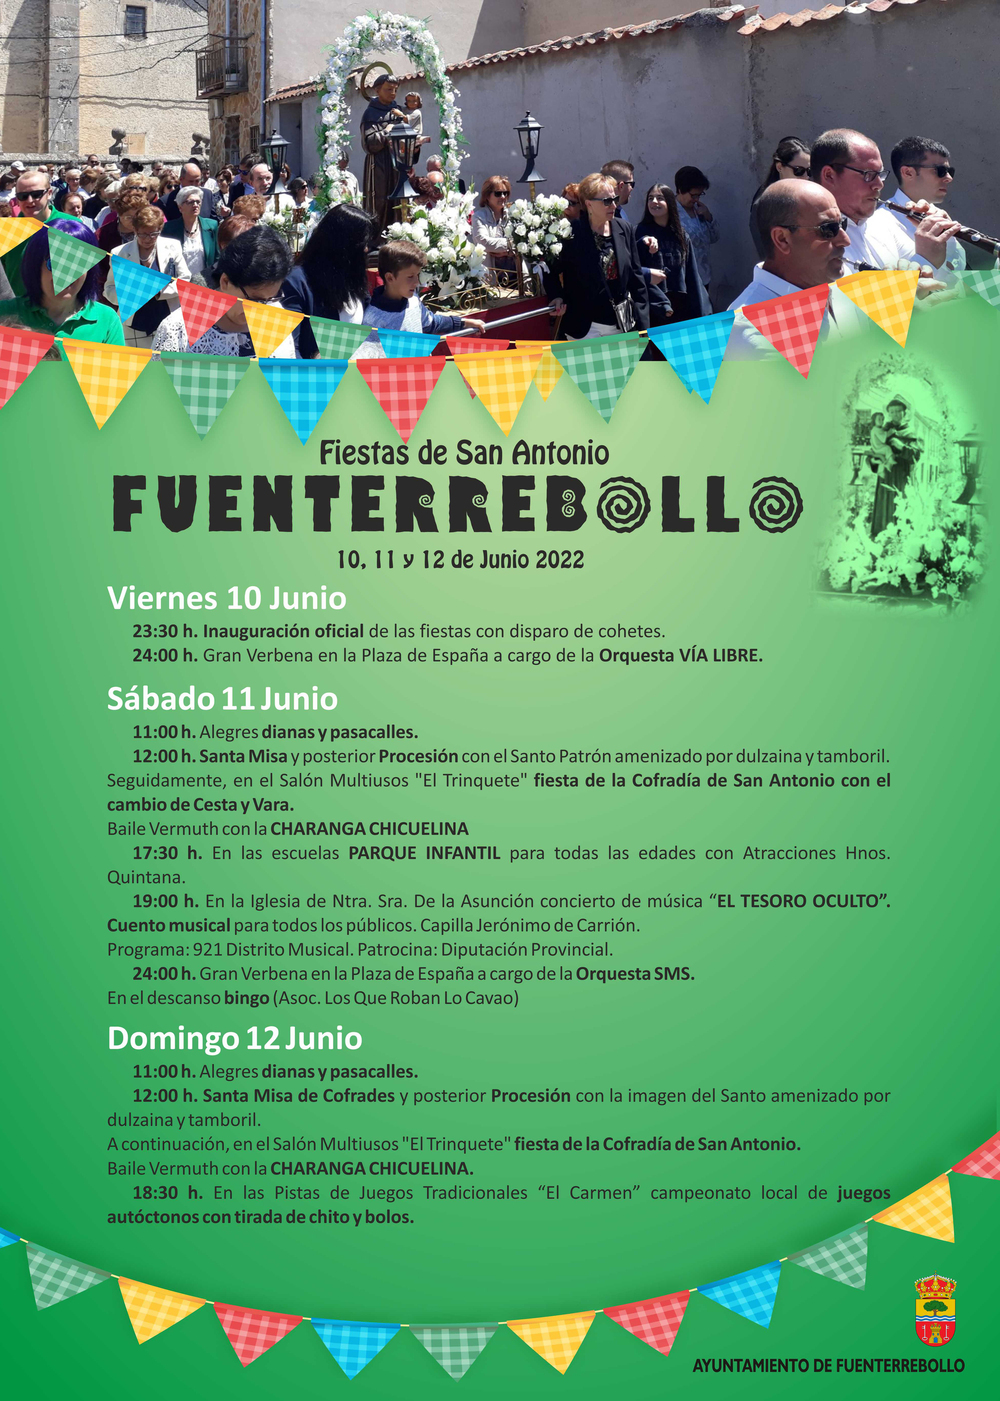 Fueterrebollo celebra las fiestas en honor a San Antonio